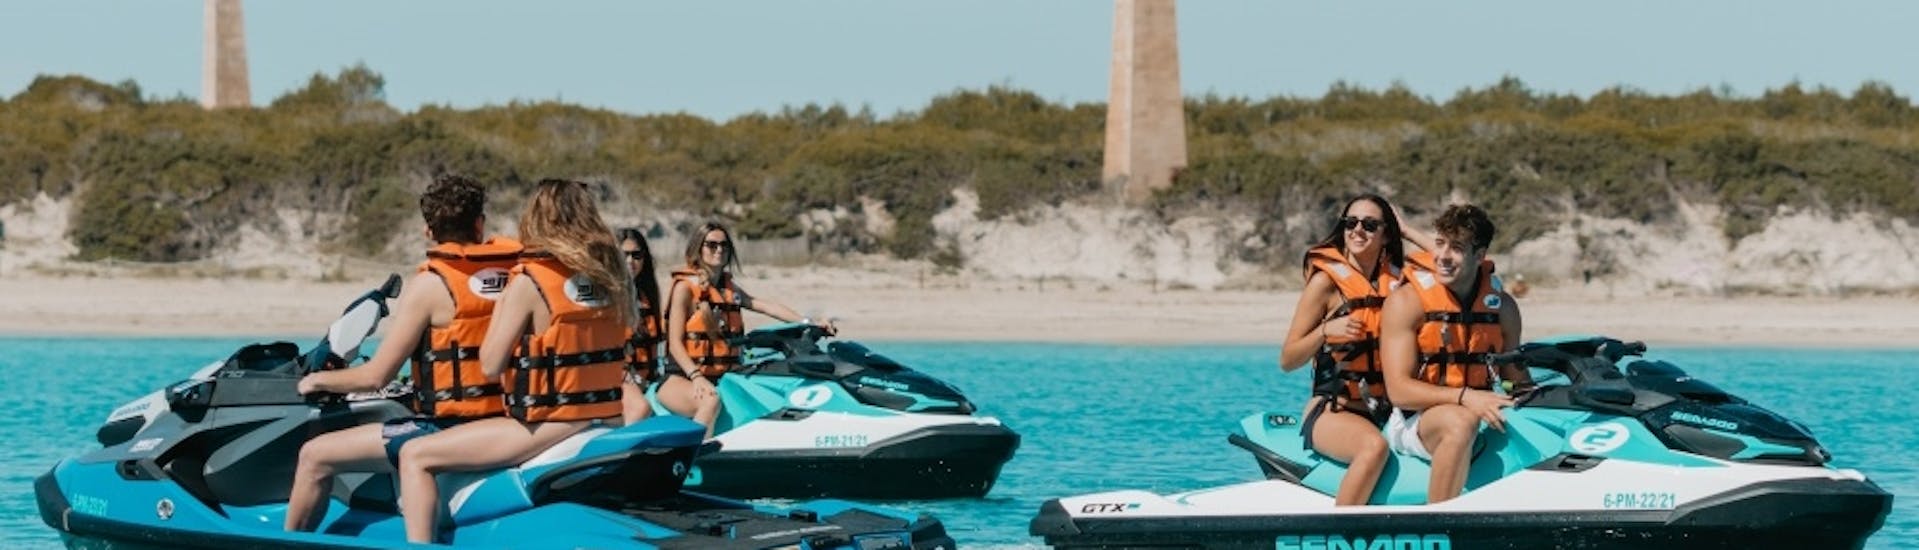 Mensen genieten in de zee tijdens een jetski-safari zonder vergunning in Mallorca met GoJet jetski Mallorca.